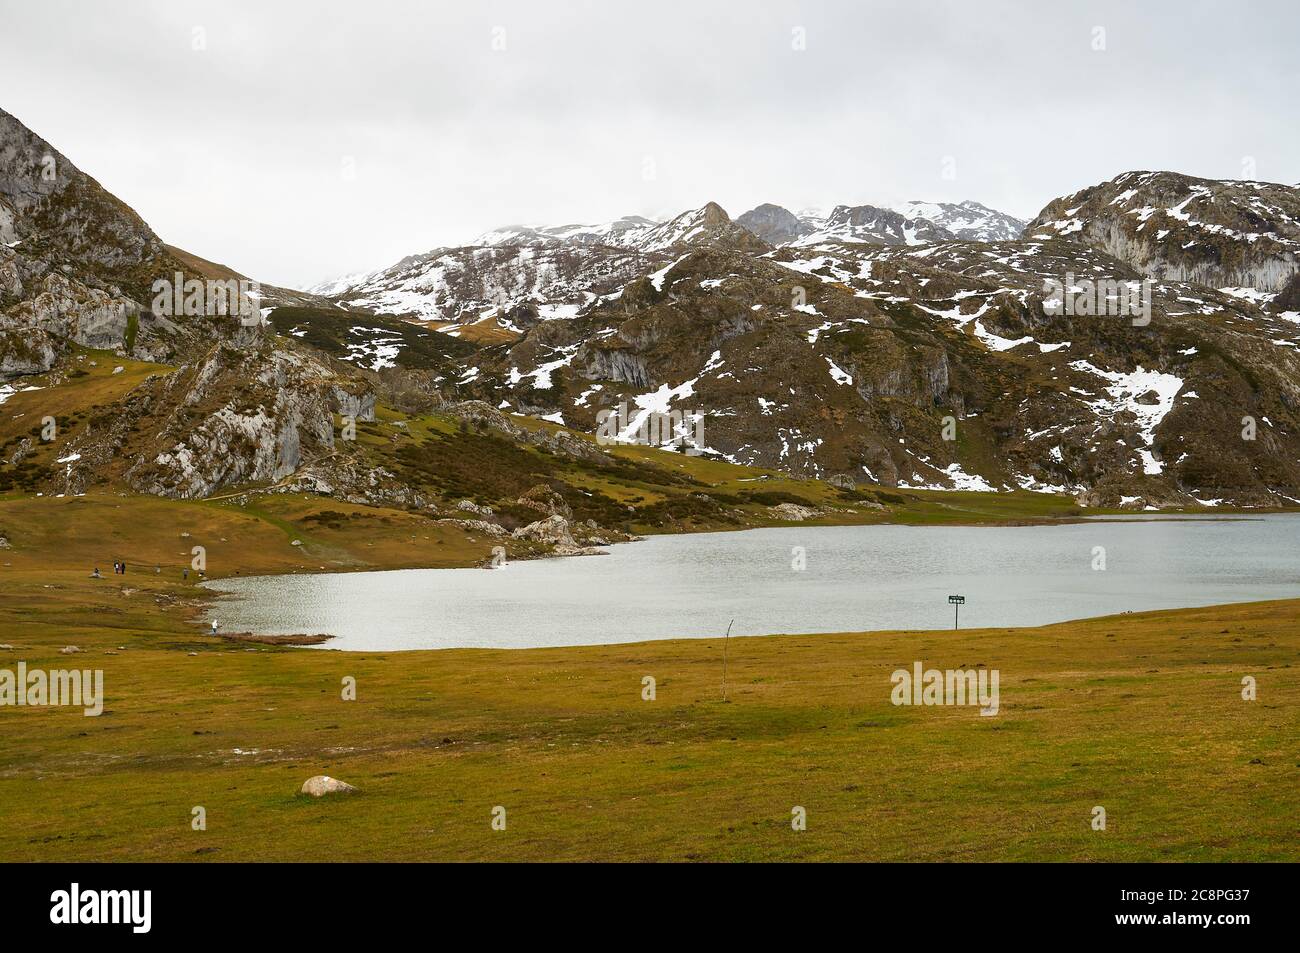 Escursionisti intorno al lago glaciale del Lago Ercina in una giornata nuvolosa con neve nelle cime vicine (Cangas de Onís, Parco Nazionale Picos de Europa, Asturie, Spagna) Foto Stock